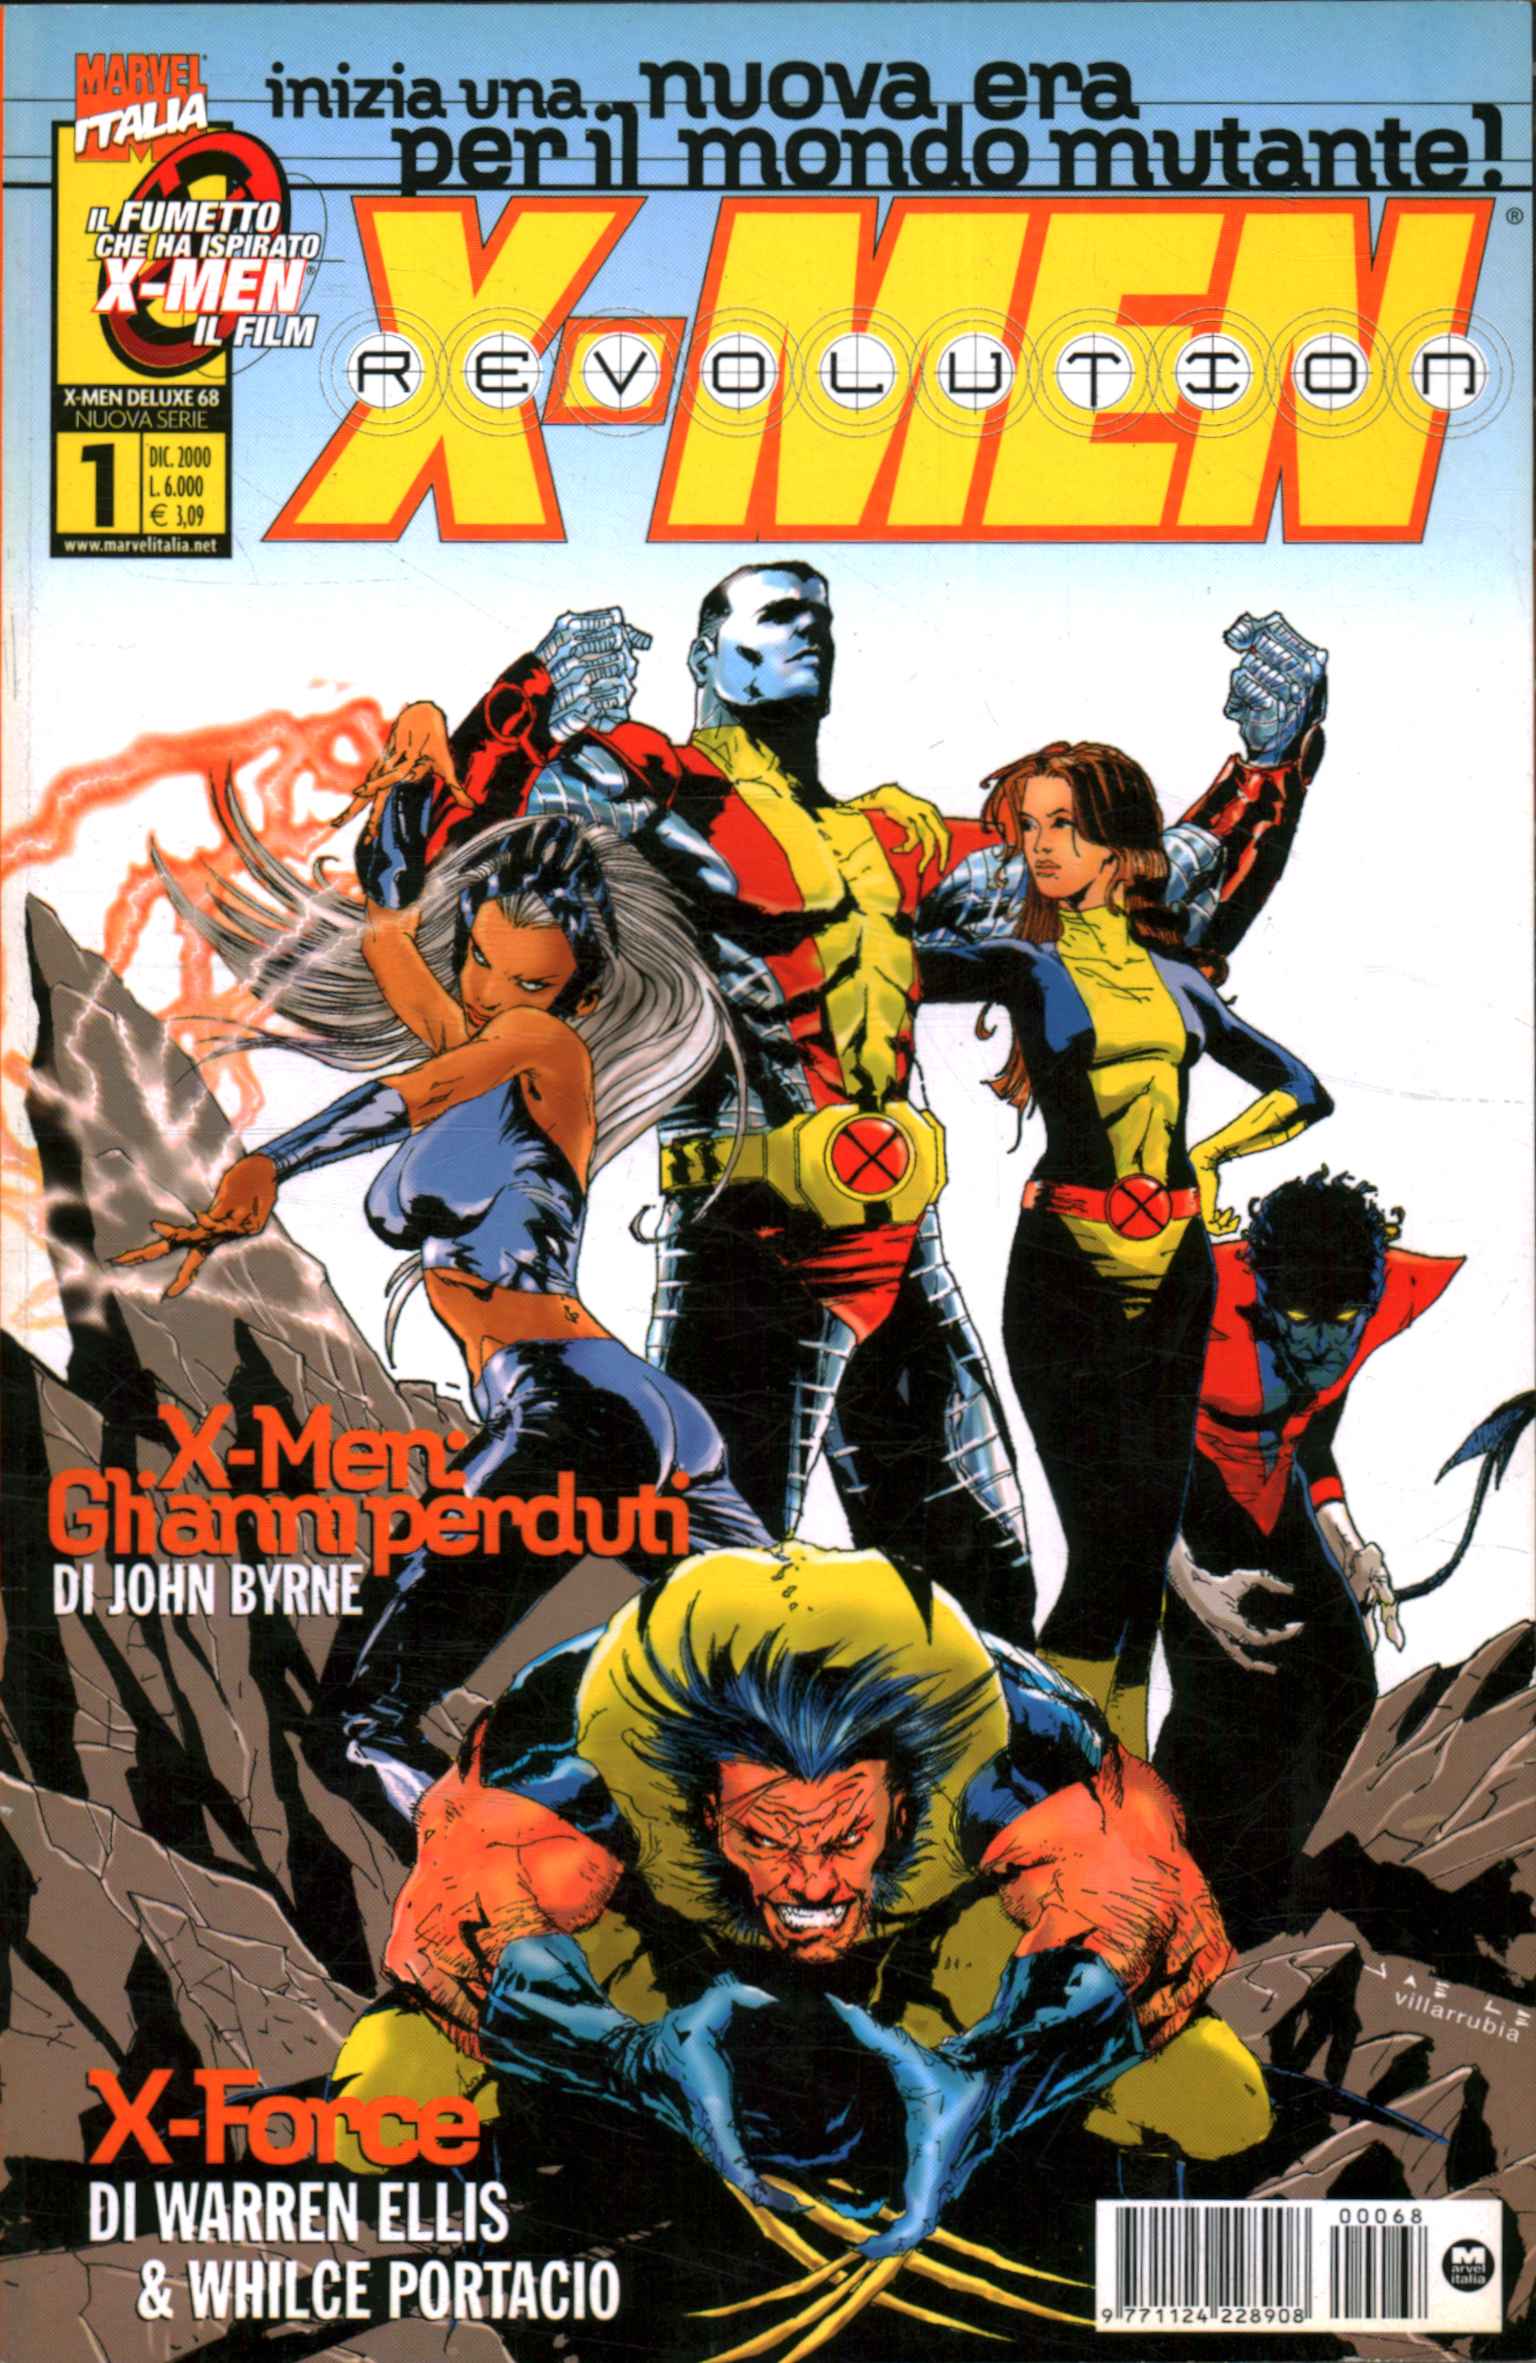 Revolución de los X-Men. Serie completa (16 vol.